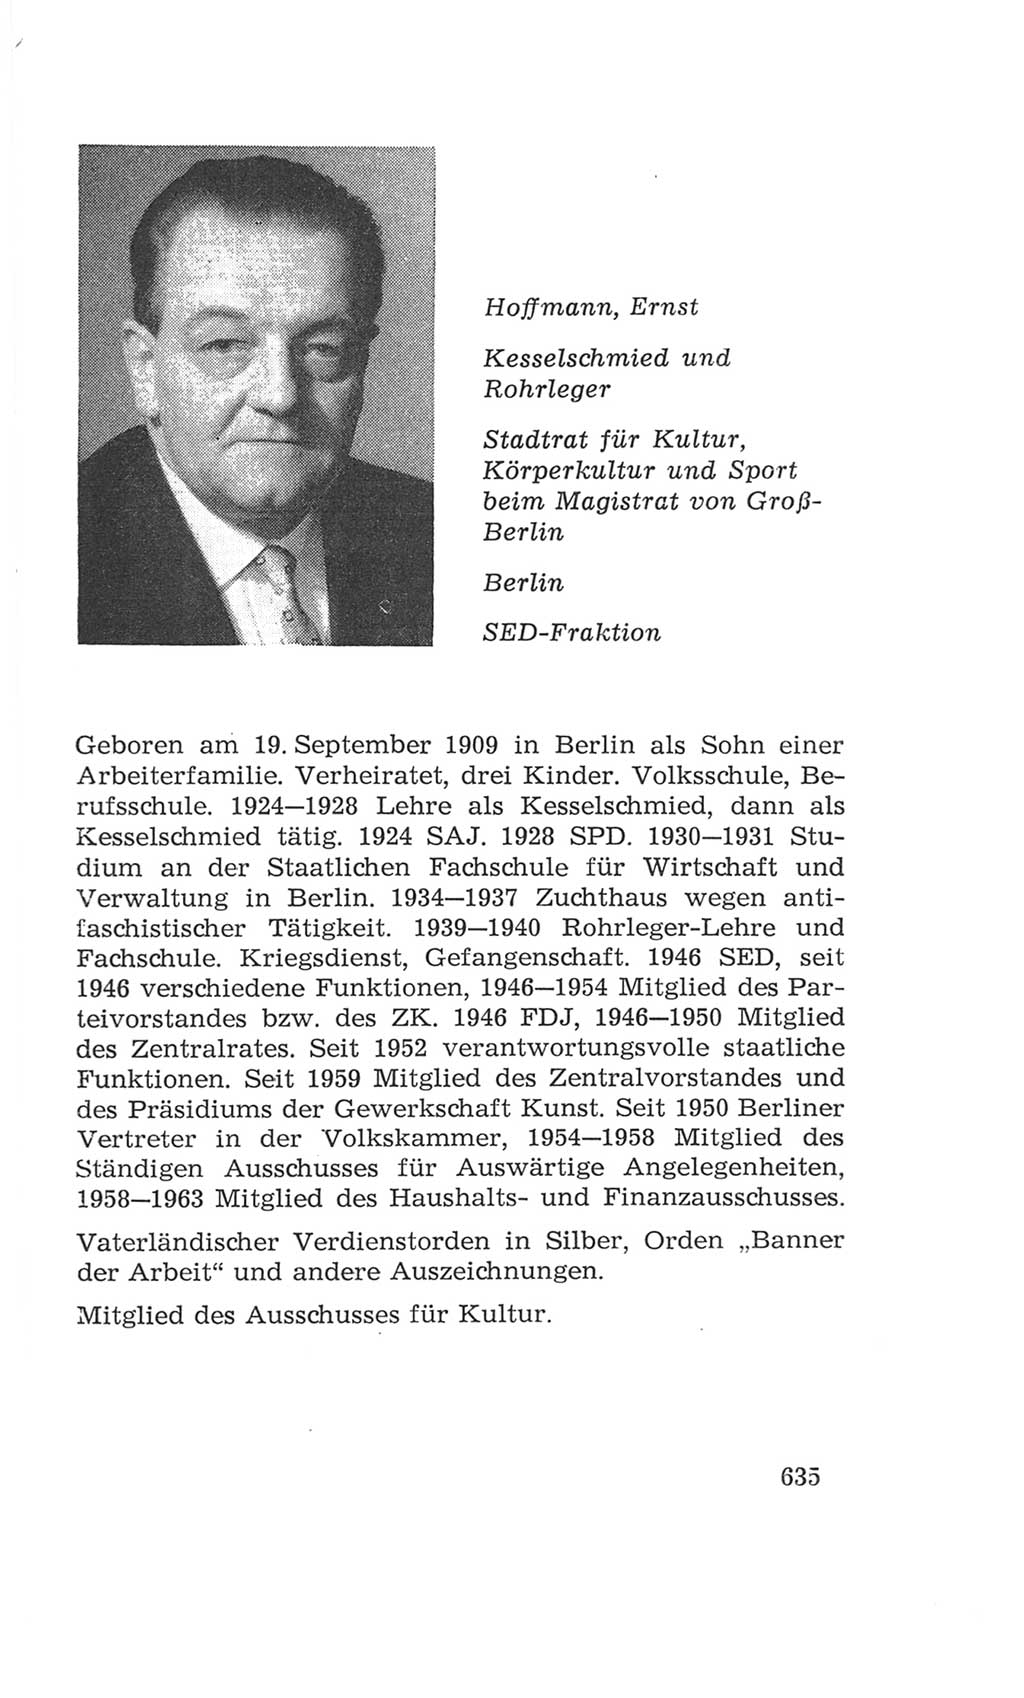 Volkskammer (VK) der Deutschen Demokratischen Republik (DDR), 4. Wahlperiode 1963-1967, Seite 635 (VK. DDR 4. WP. 1963-1967, S. 635)